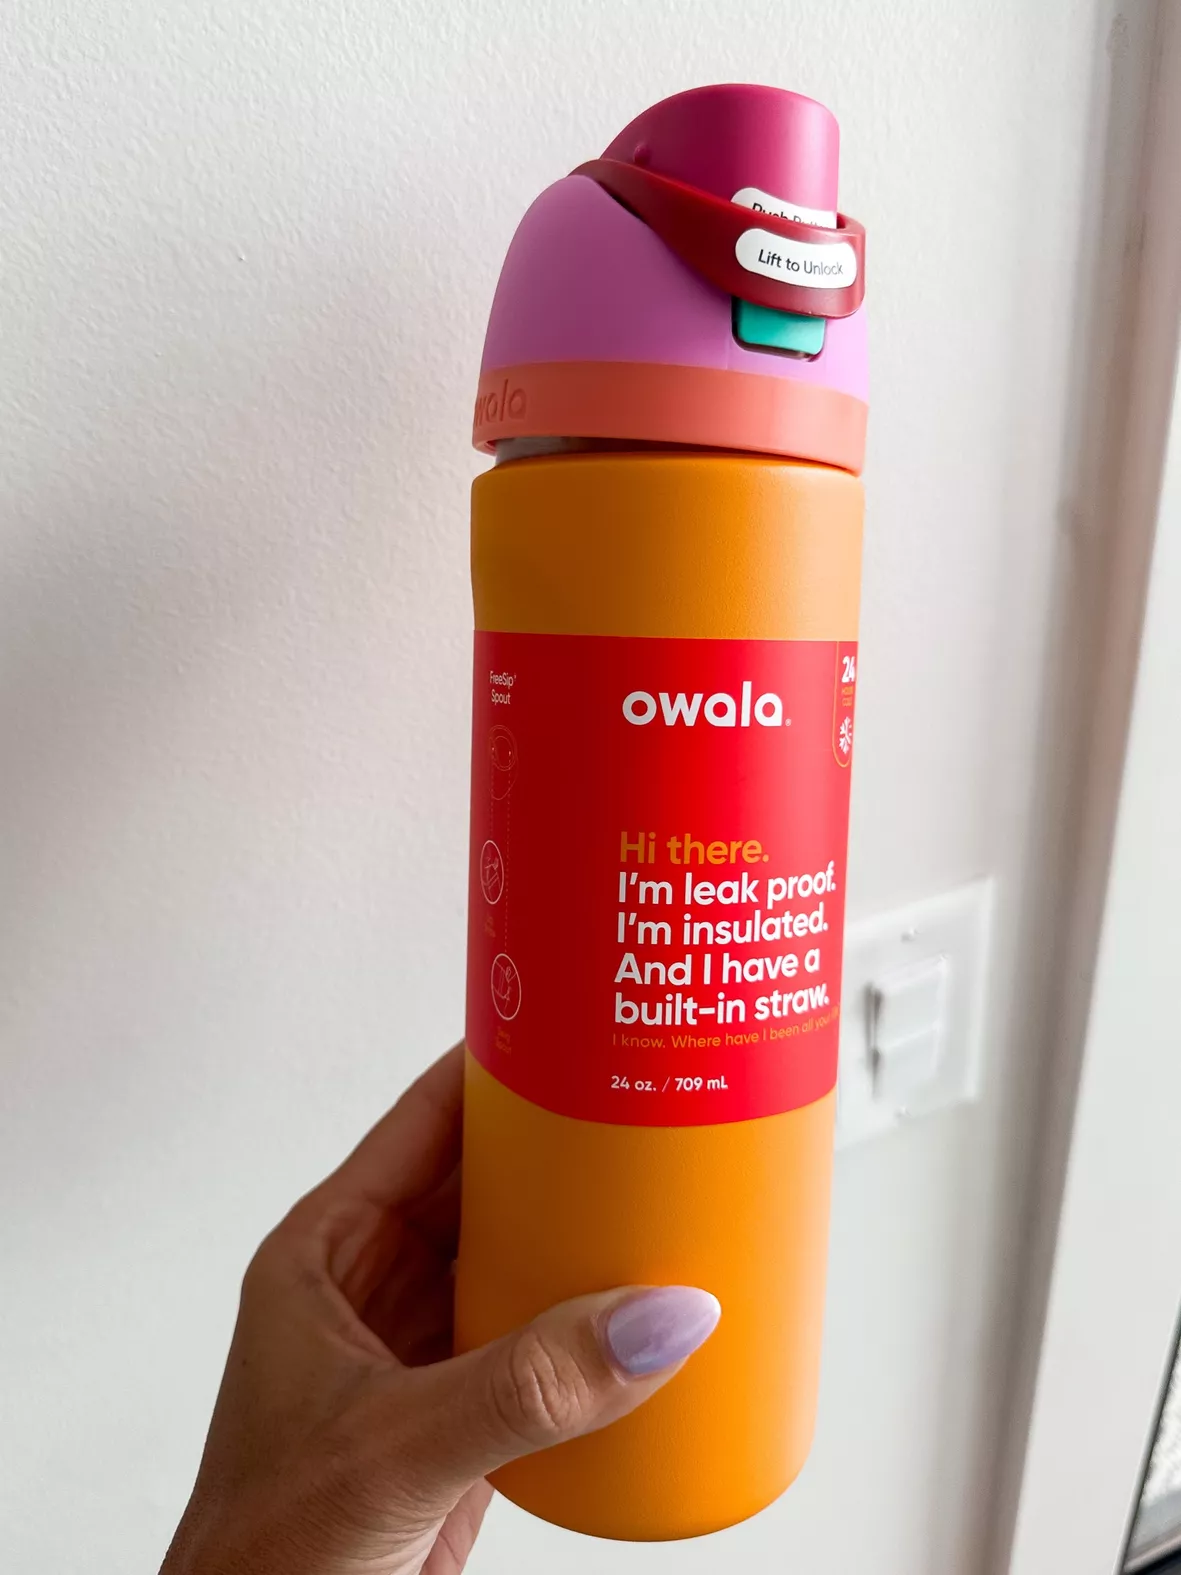 Personalized Owala 24 Oz Freesip Water Bottle Leak Proof Built in